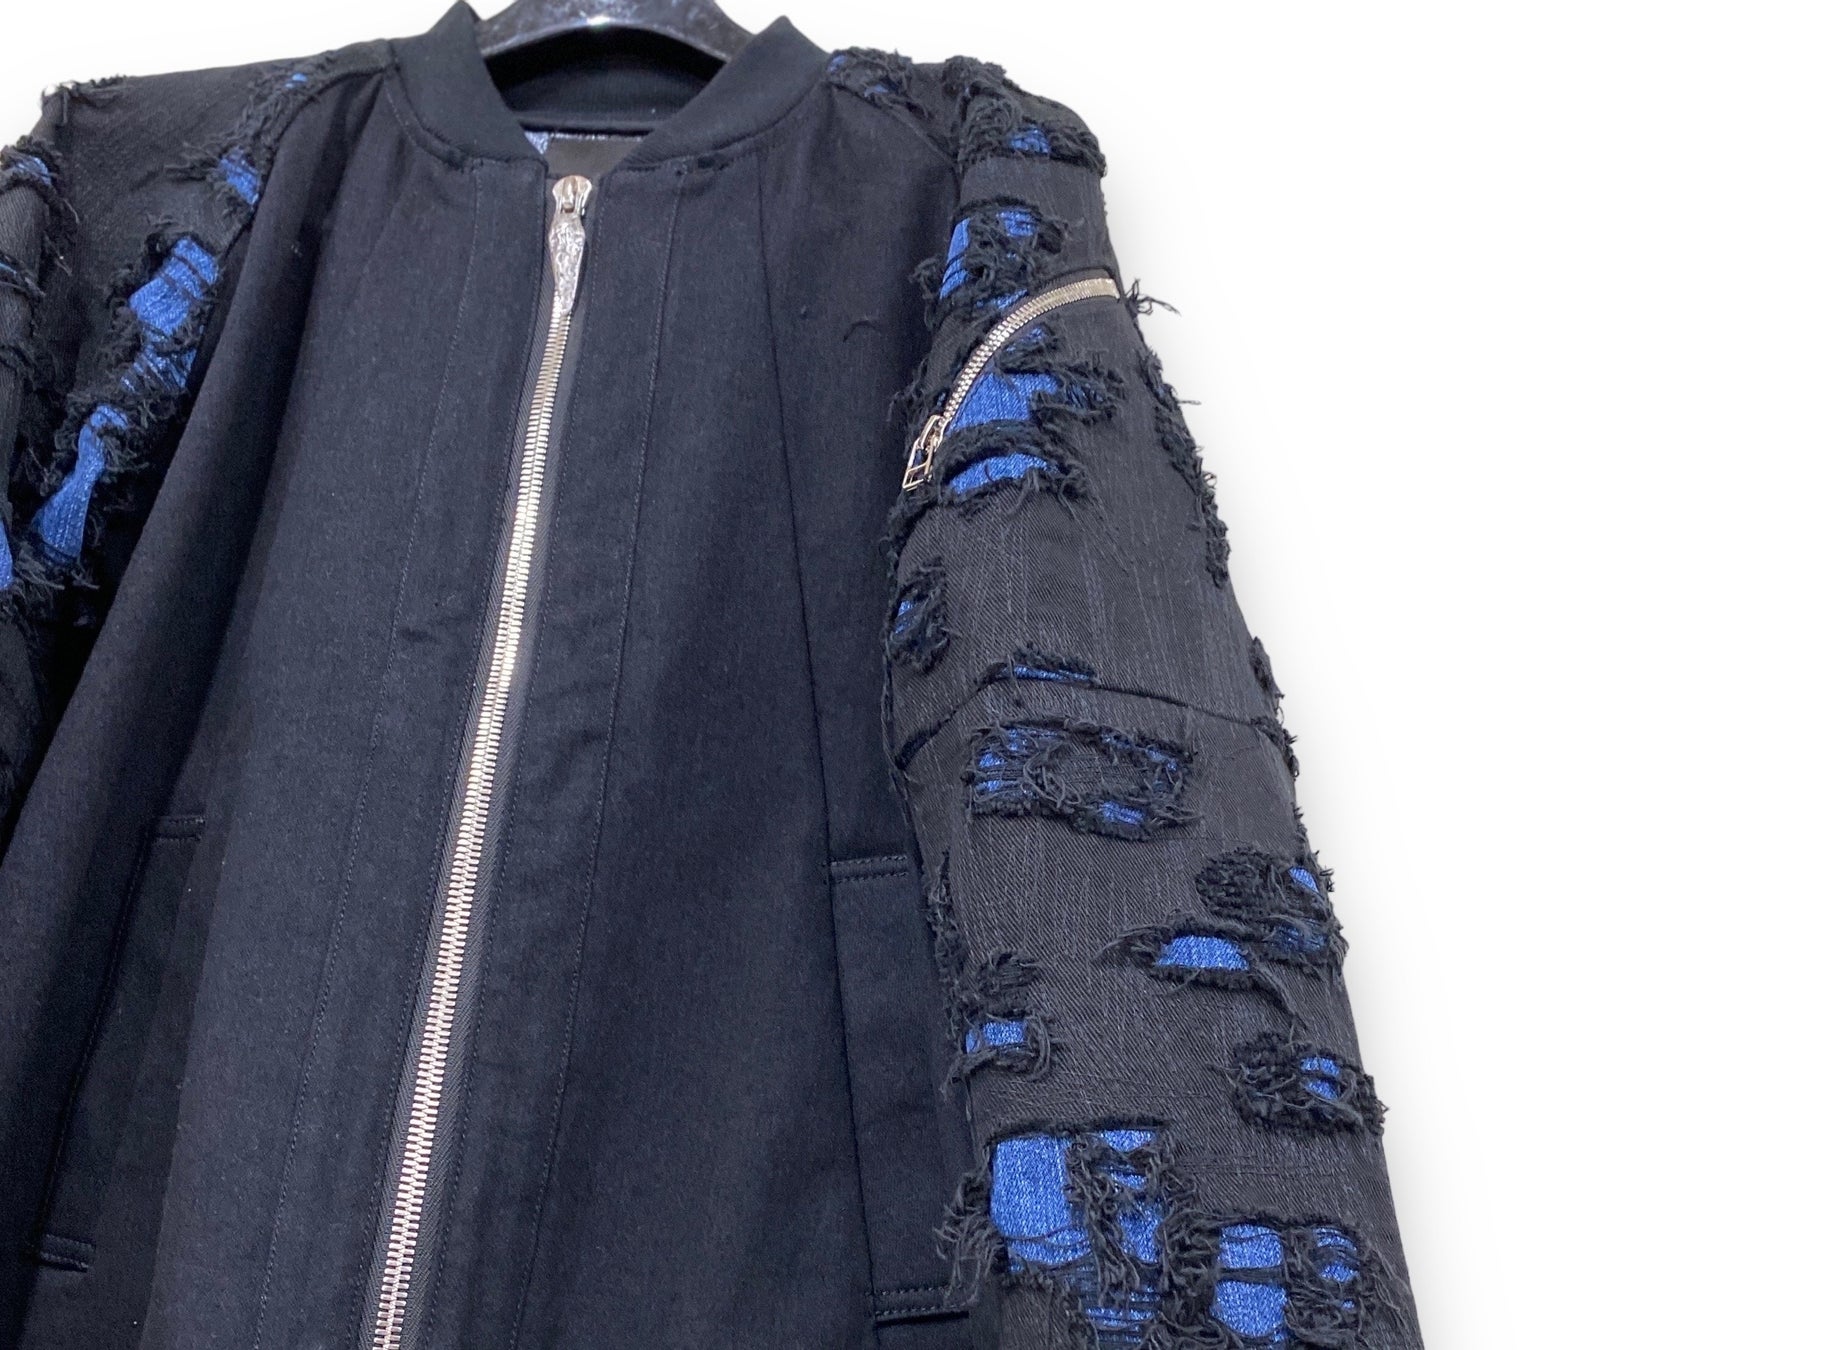 MA1型のジャケットが登場した。袖とバックヨークがダメージ刺繍デニムとなっている。